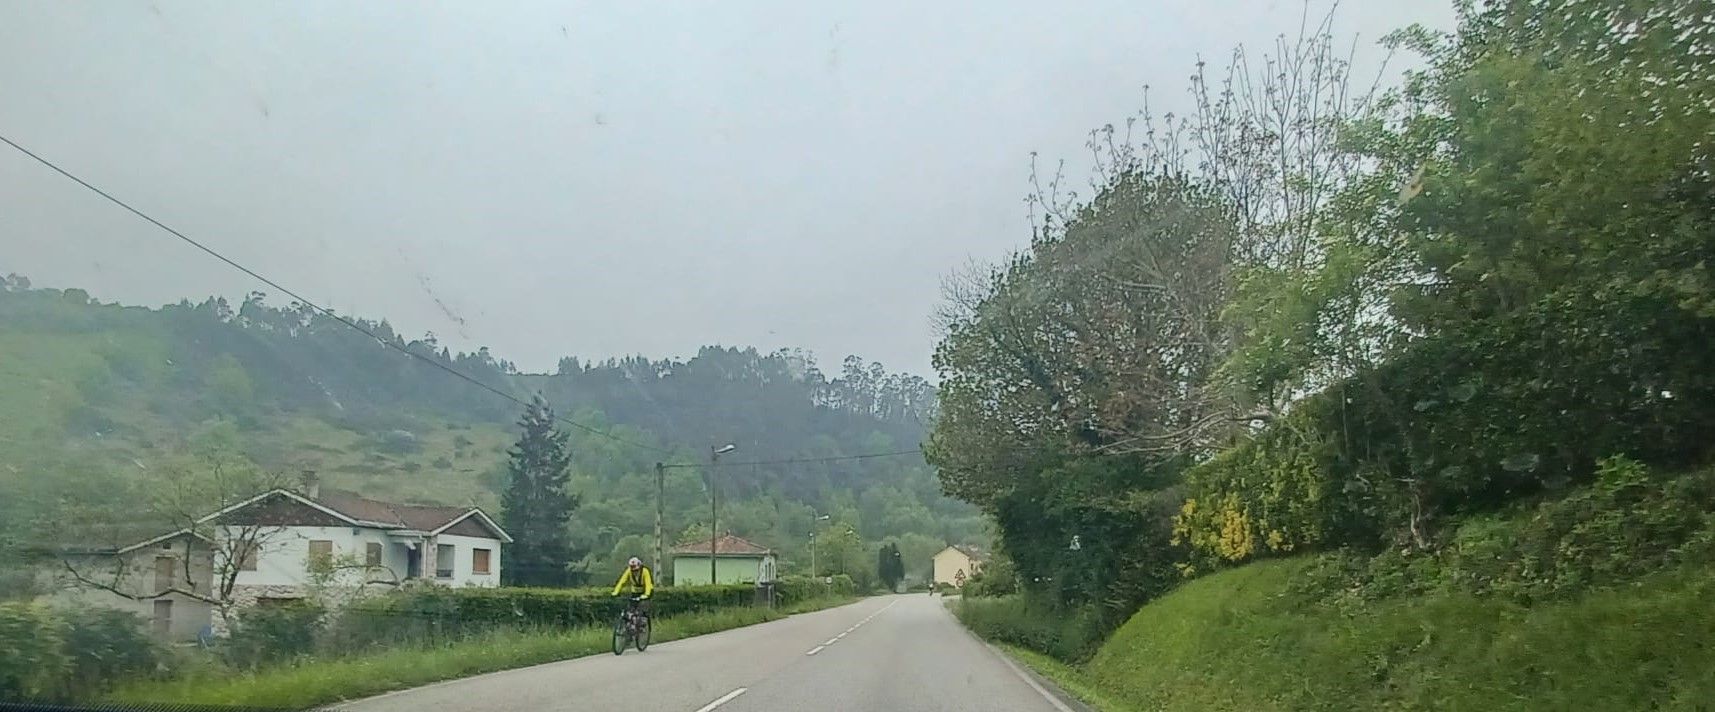 La "otra Vuelta" recorre Siero: lleno total de ciclistas en la carretera Carbonera a su paso por el municipio